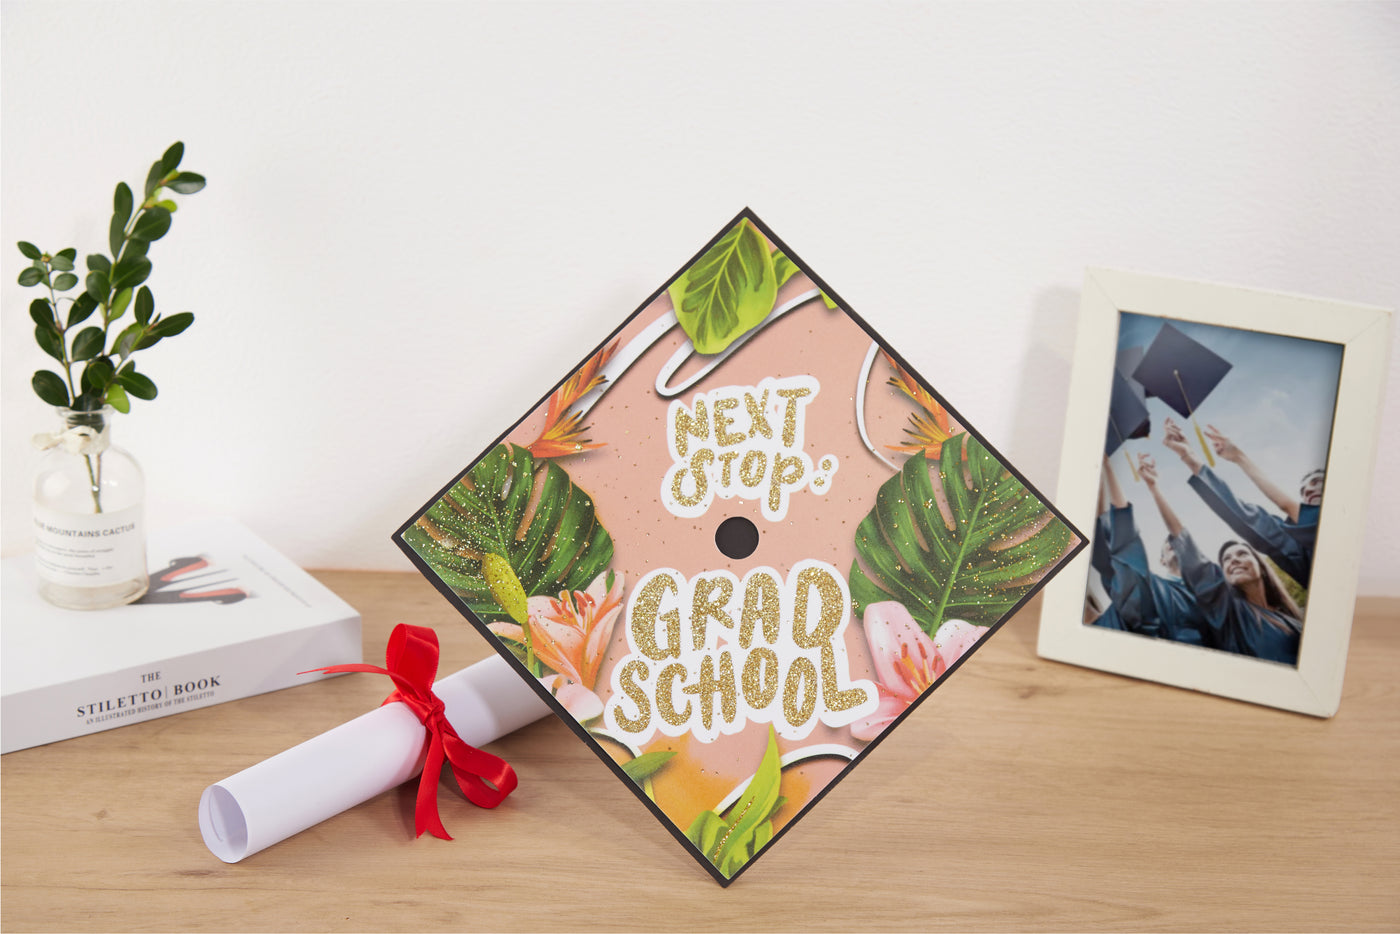 Graduation cap topper art print, Next stop: grad school